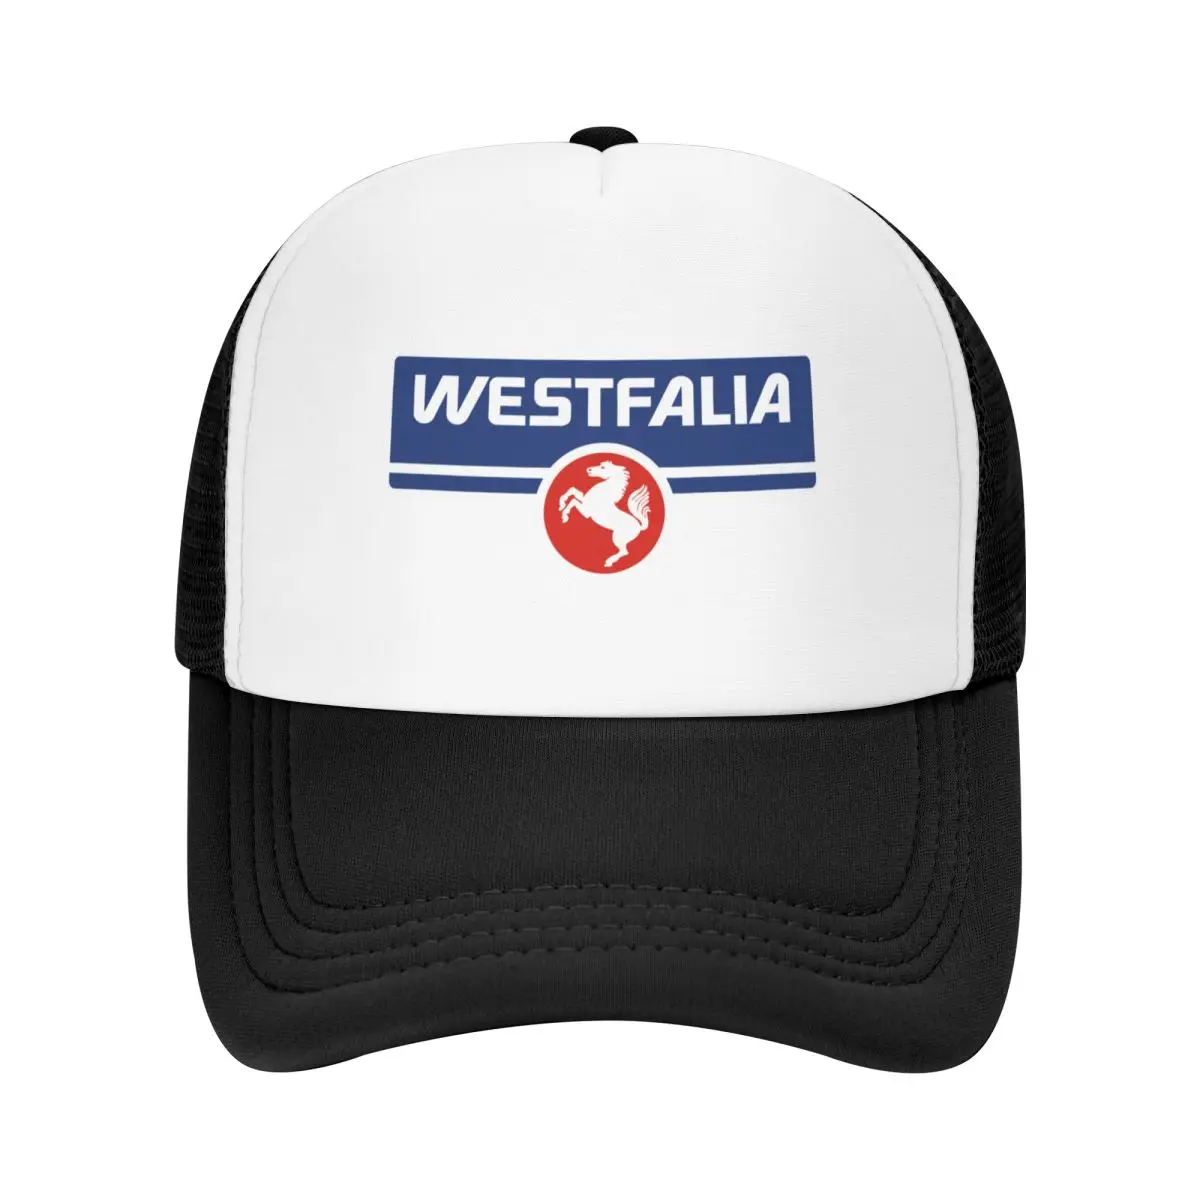 Бейсболка Westfalia camper с защитой от ультрафиолета, солнечная шляпа, роскошная кепка, каска, мужская кепка, женская